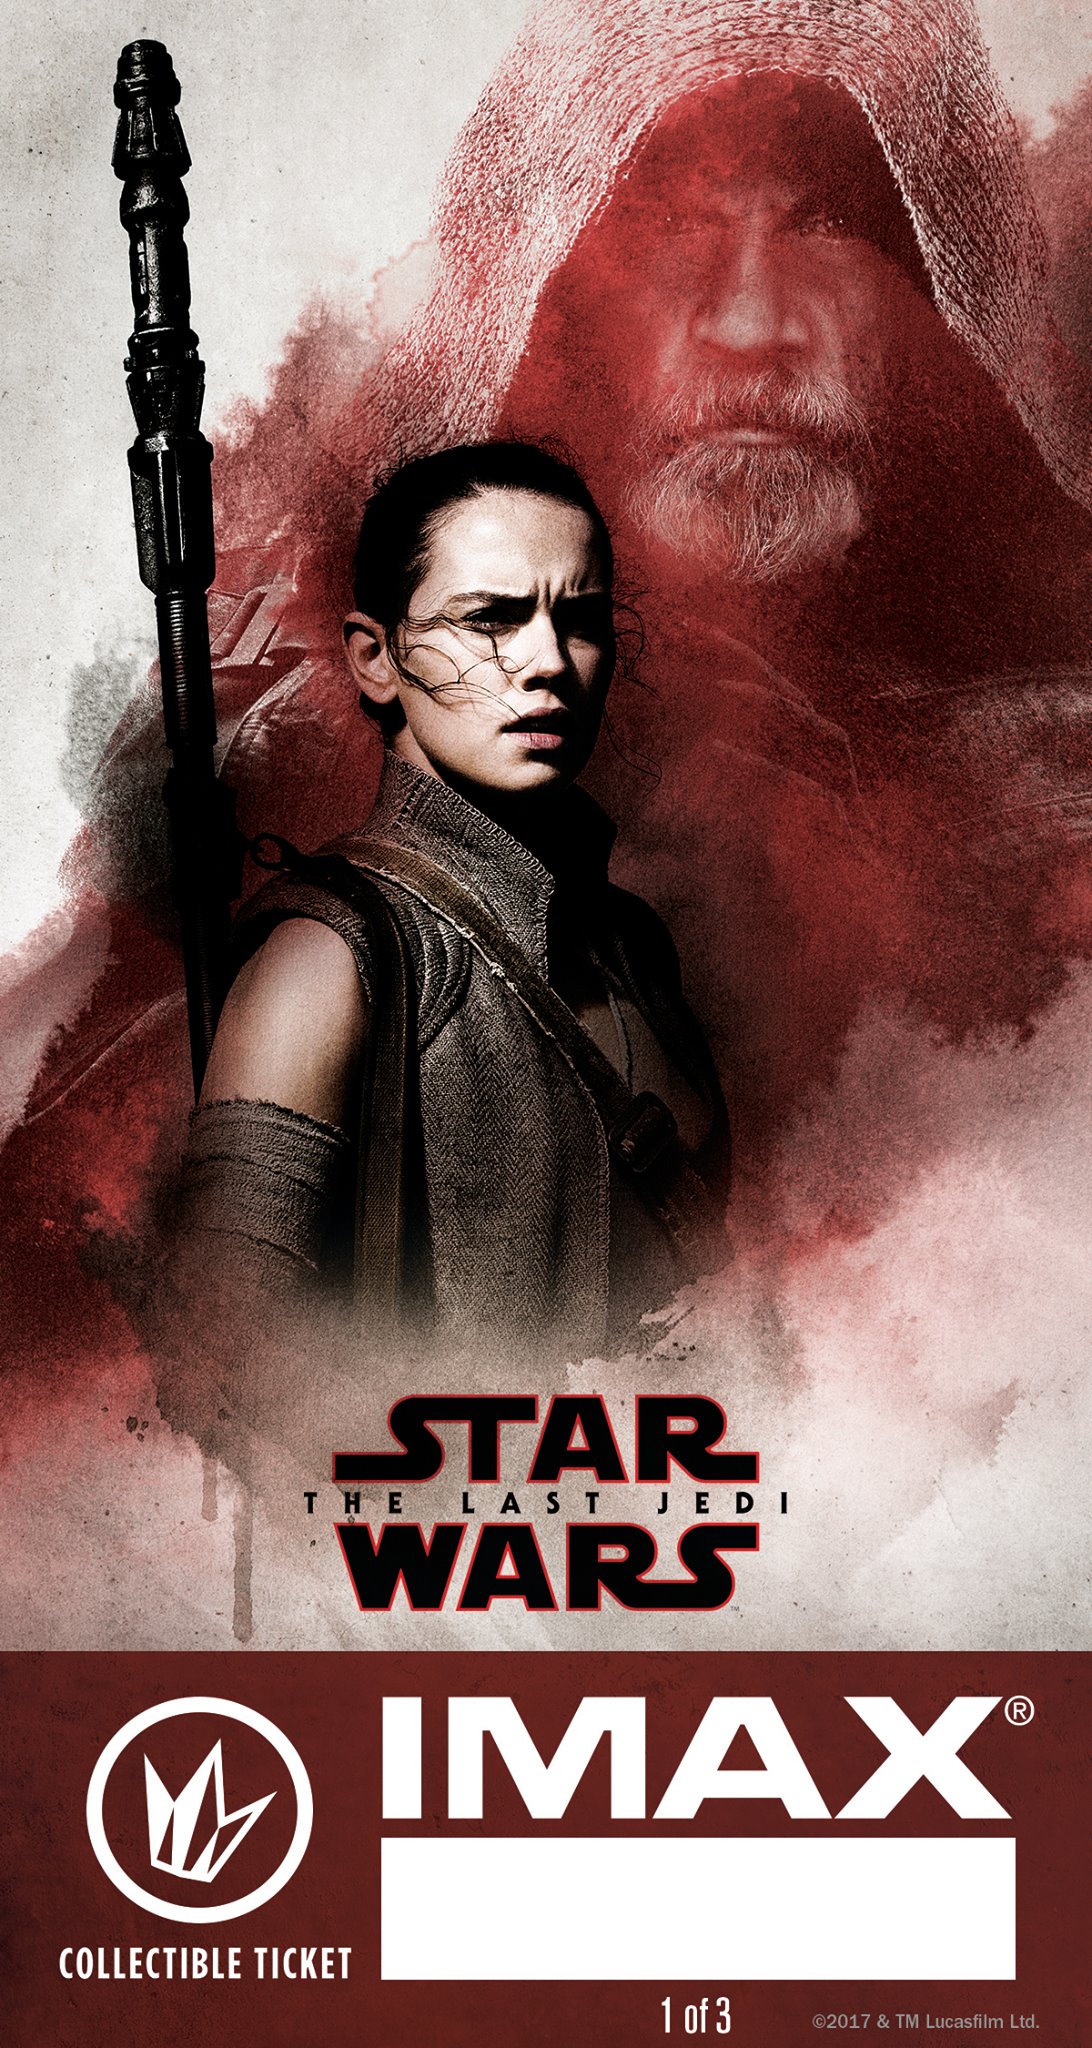 Star Wars: The Last Jedi Regal IMAX Ticket #1